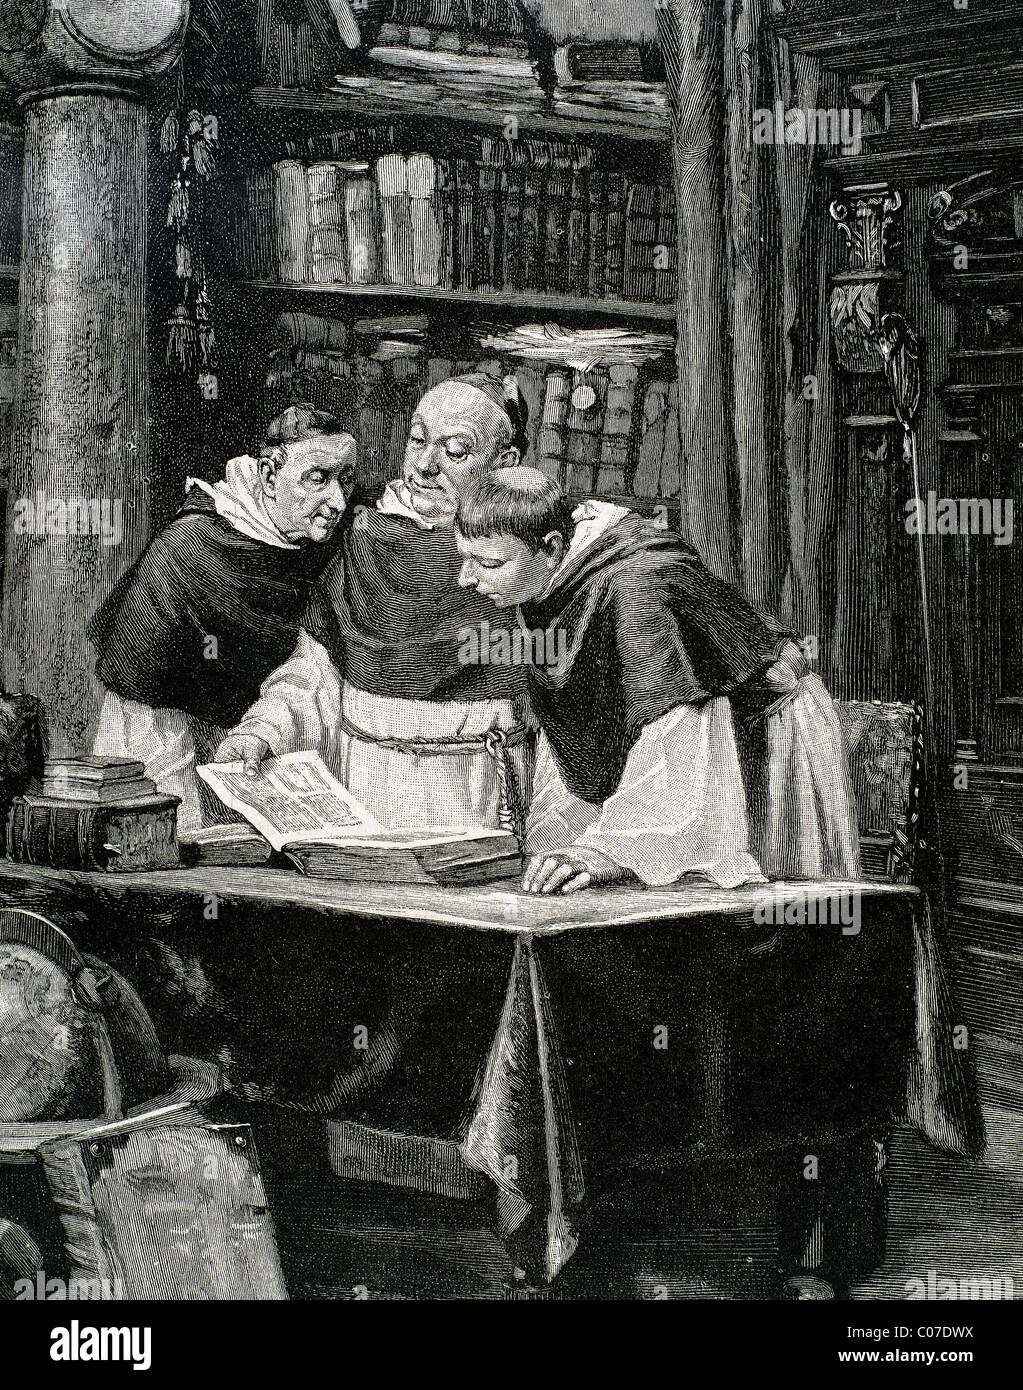 Lecture des moines une copie de la Bible de Gutenberg. Gravure par O. Roth dans 'l'Illustration' espagnole et américaine (1886). Banque D'Images